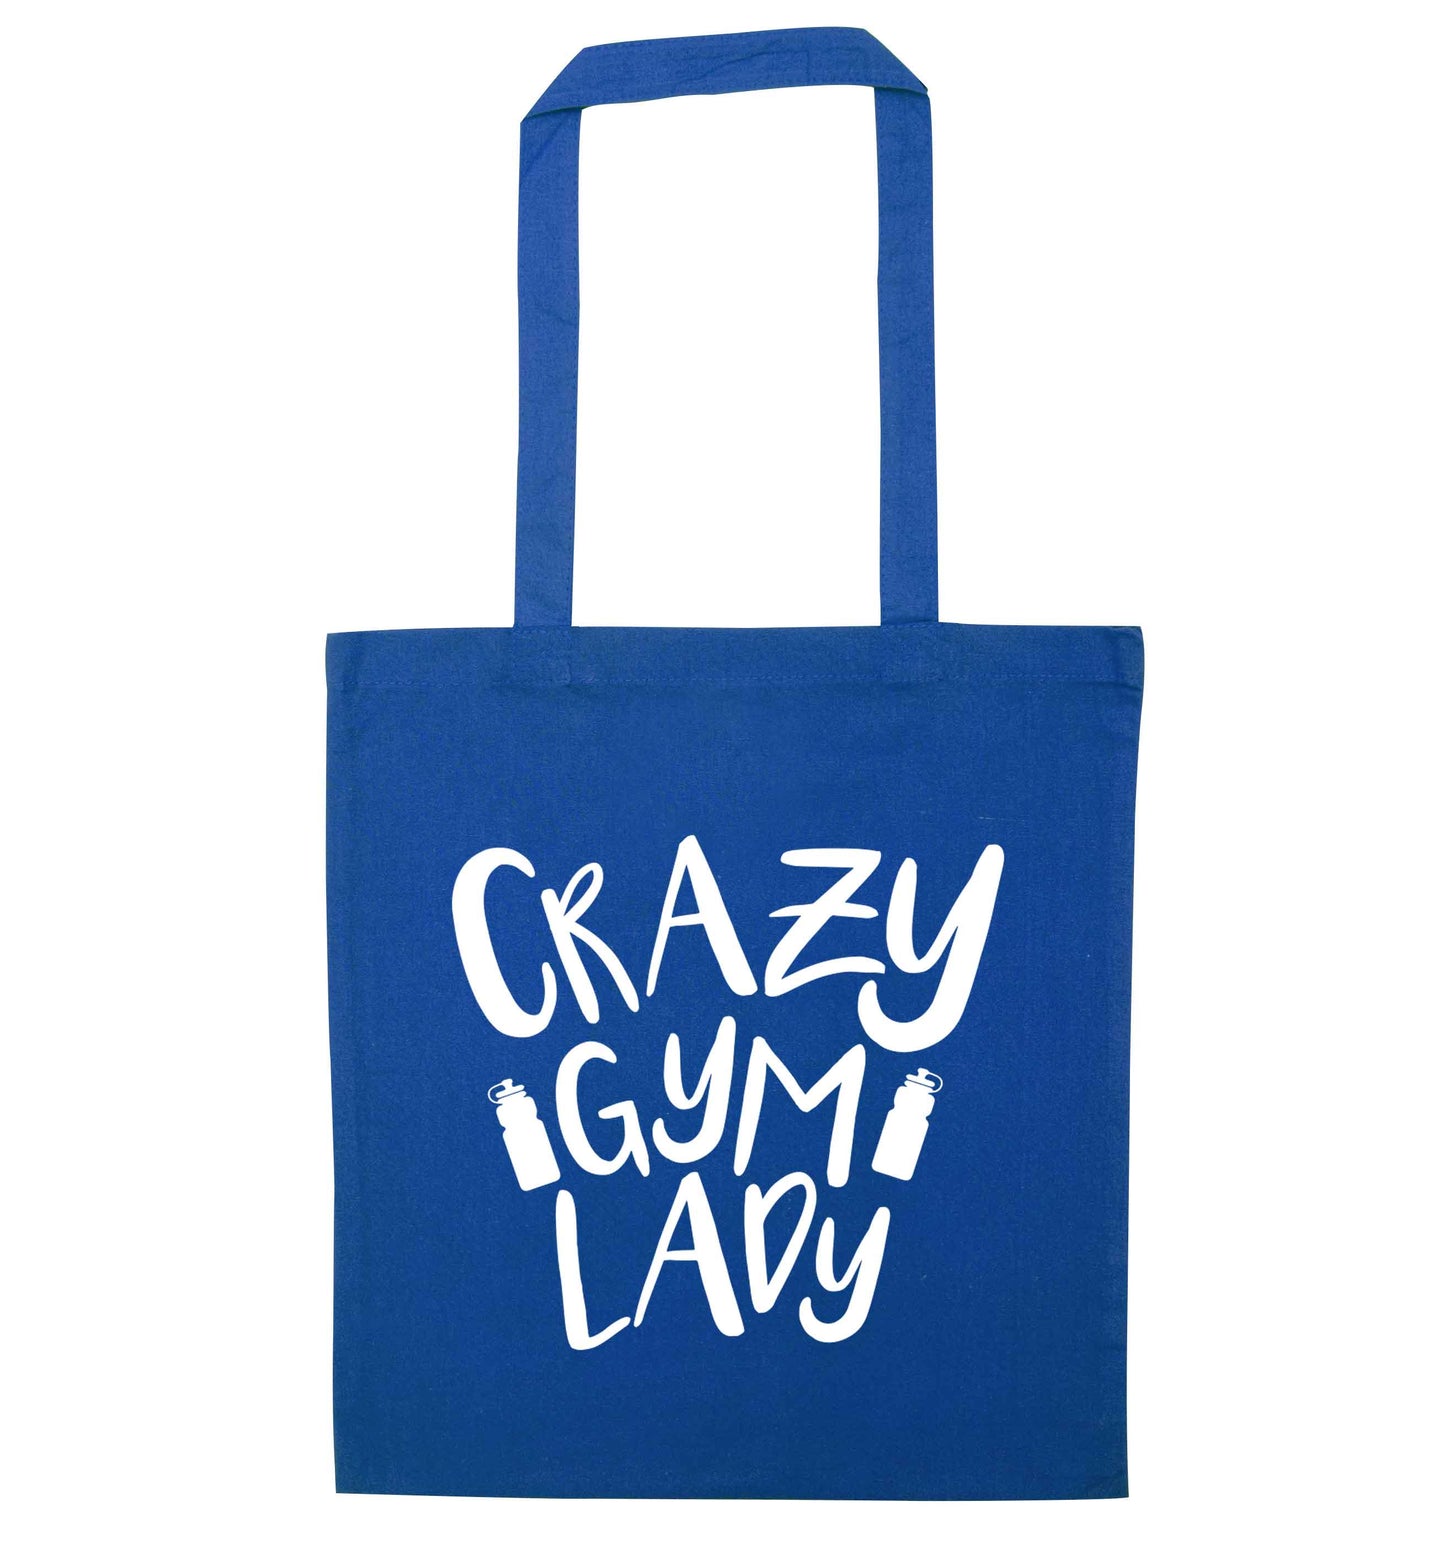 Crazy gym lady blue tote bag